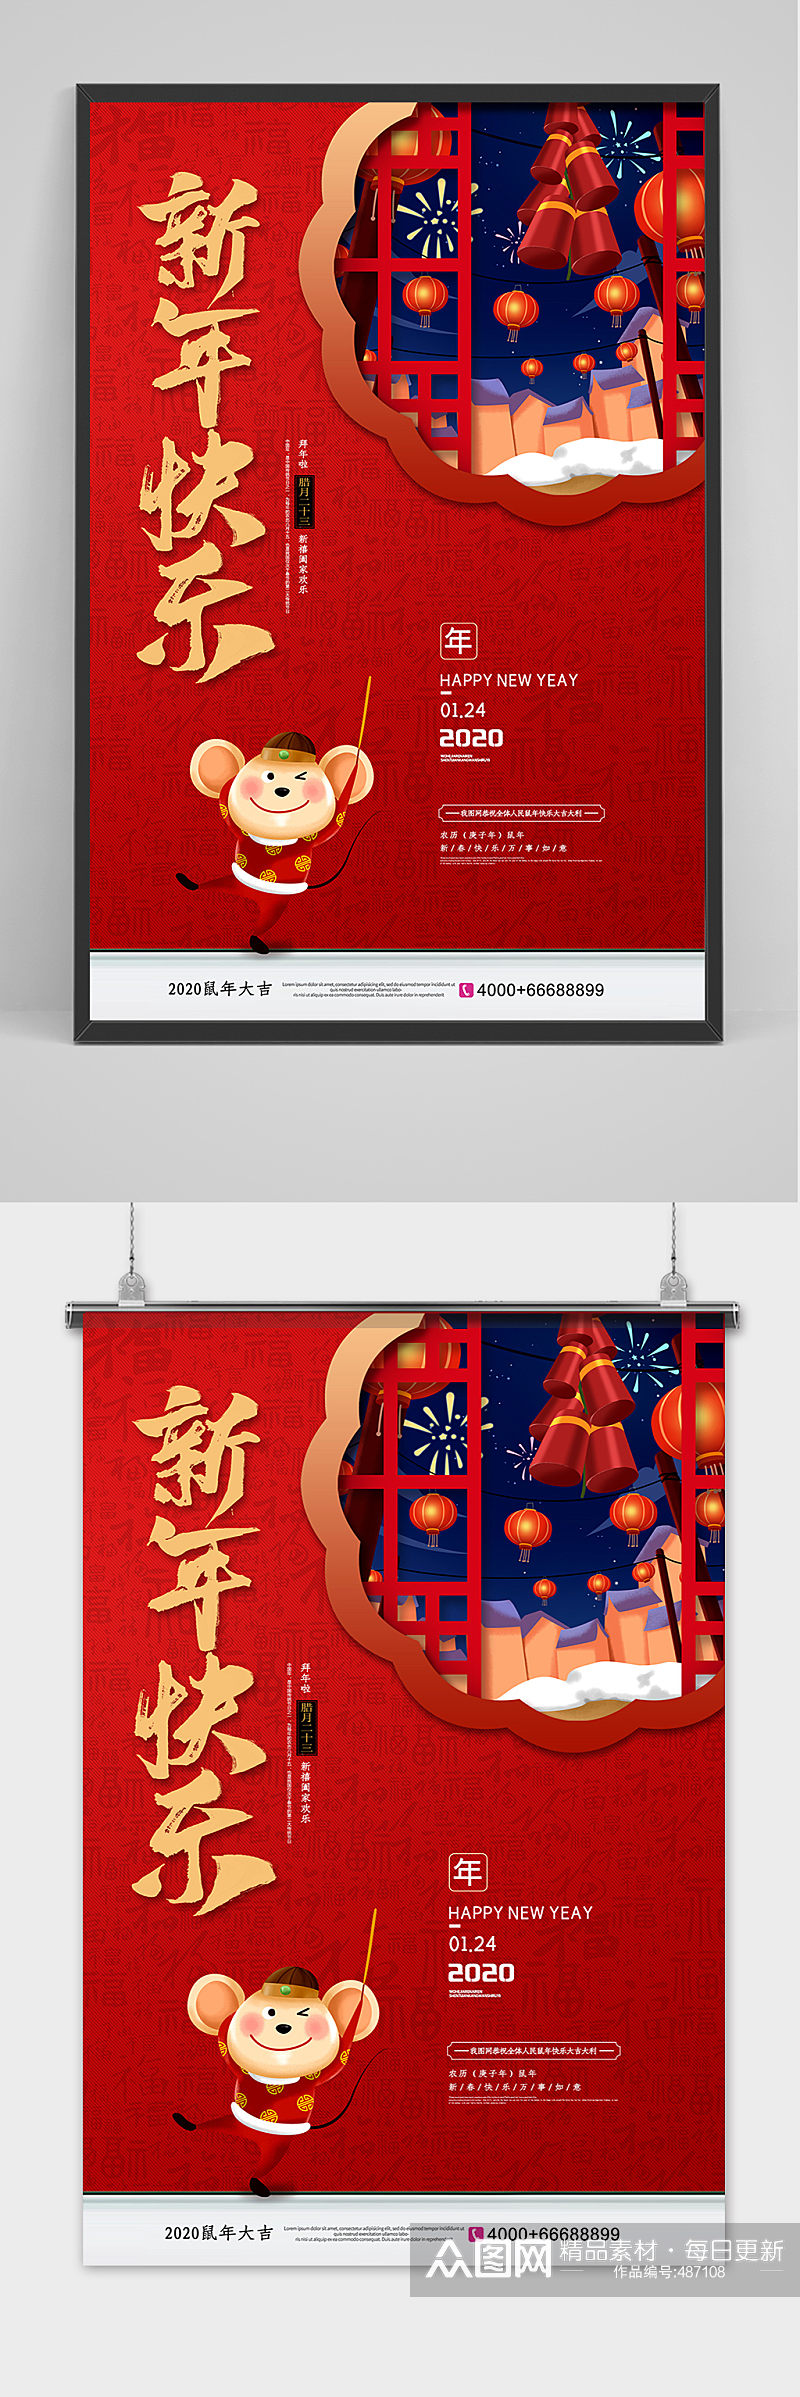 红色鼠年新年快乐春节海报素材